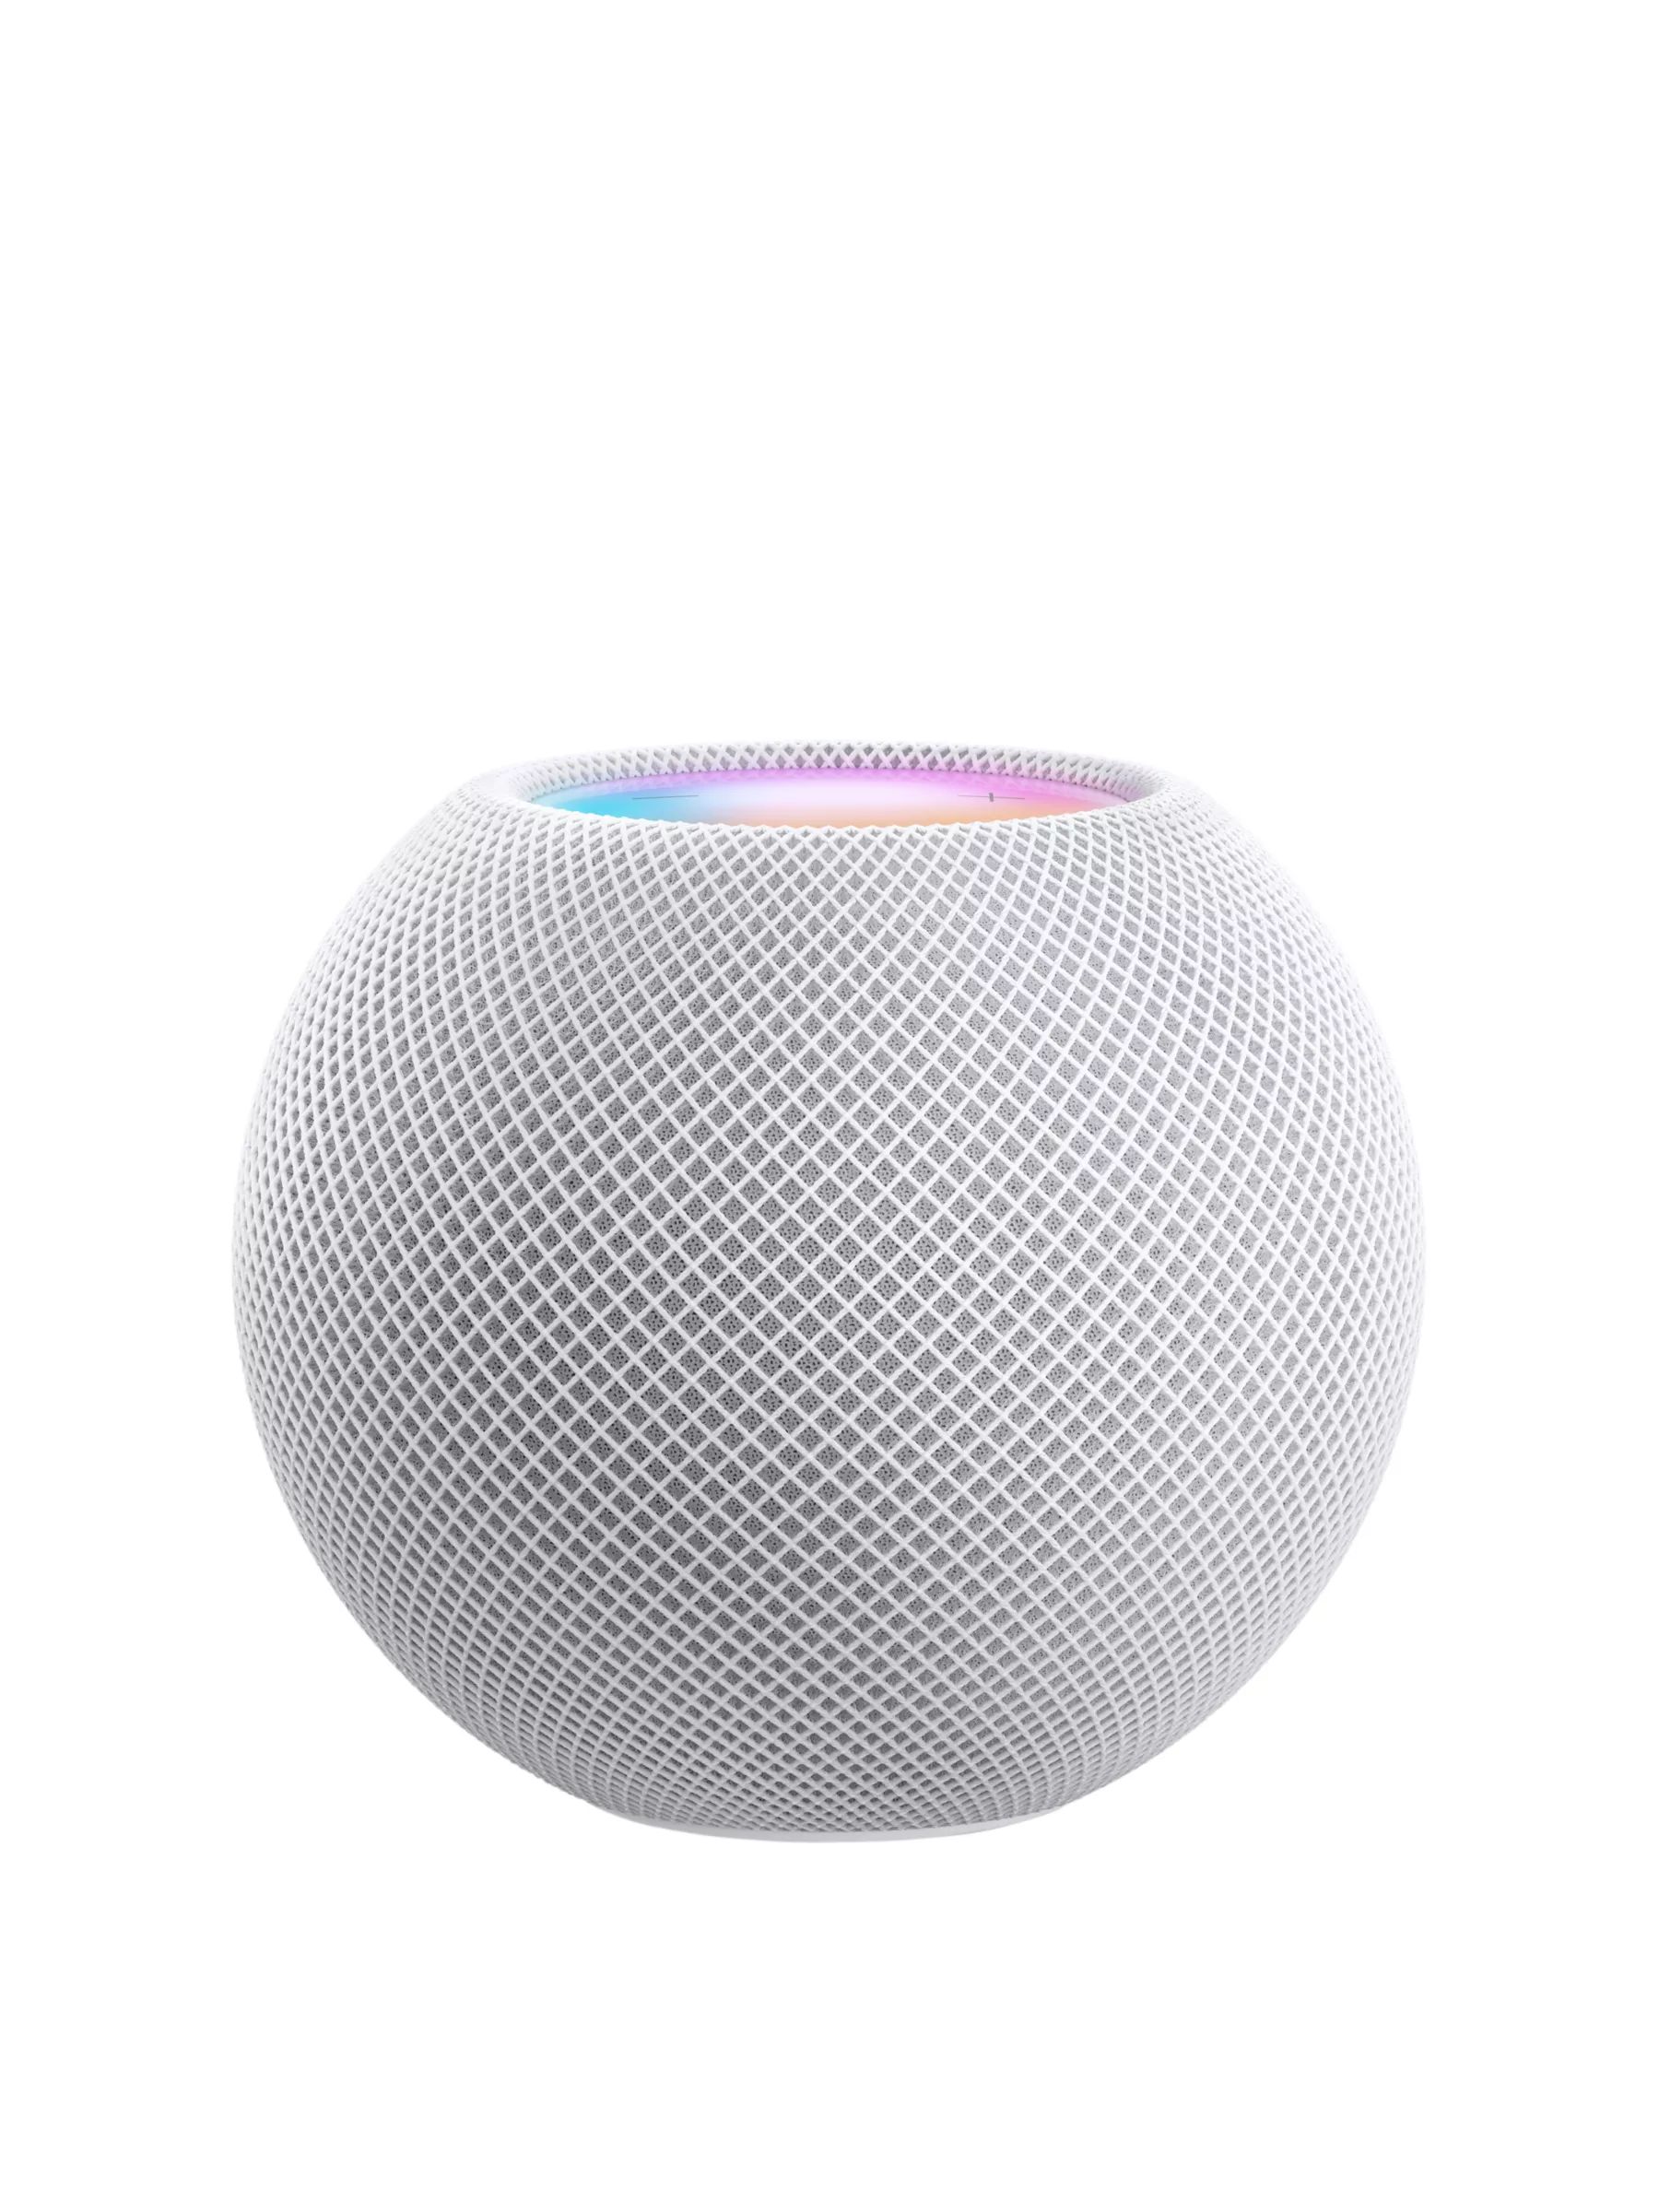 Apple HomePod mini Smart Speaker, White | John Lewis (UK)